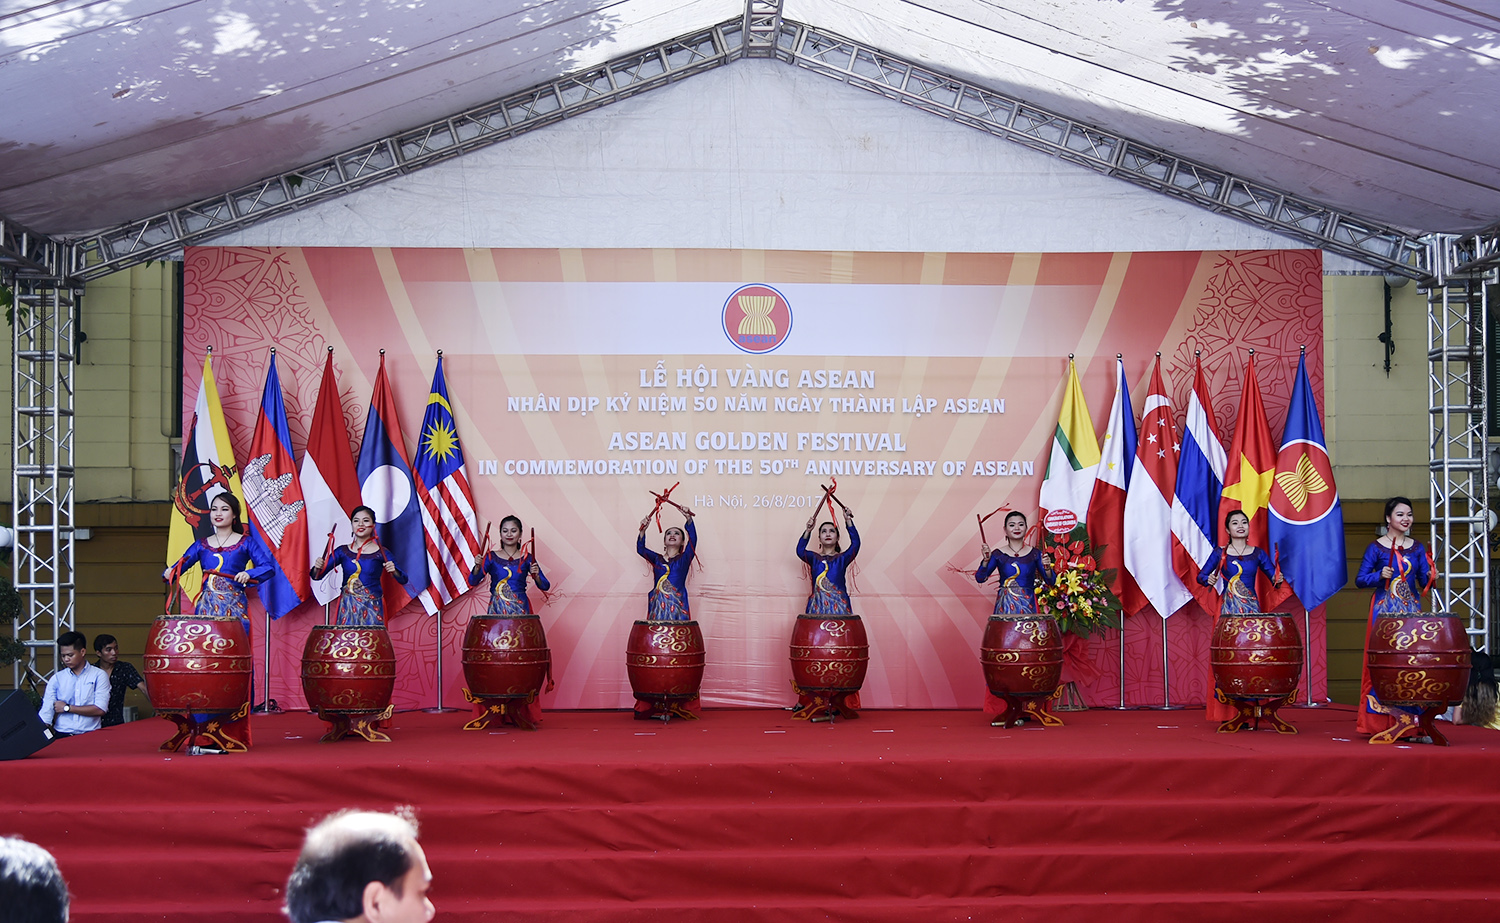 Lễ hội Vàng Asean chào mừng chặng đường 50 năm bền bỉ và thành công của ASEAN